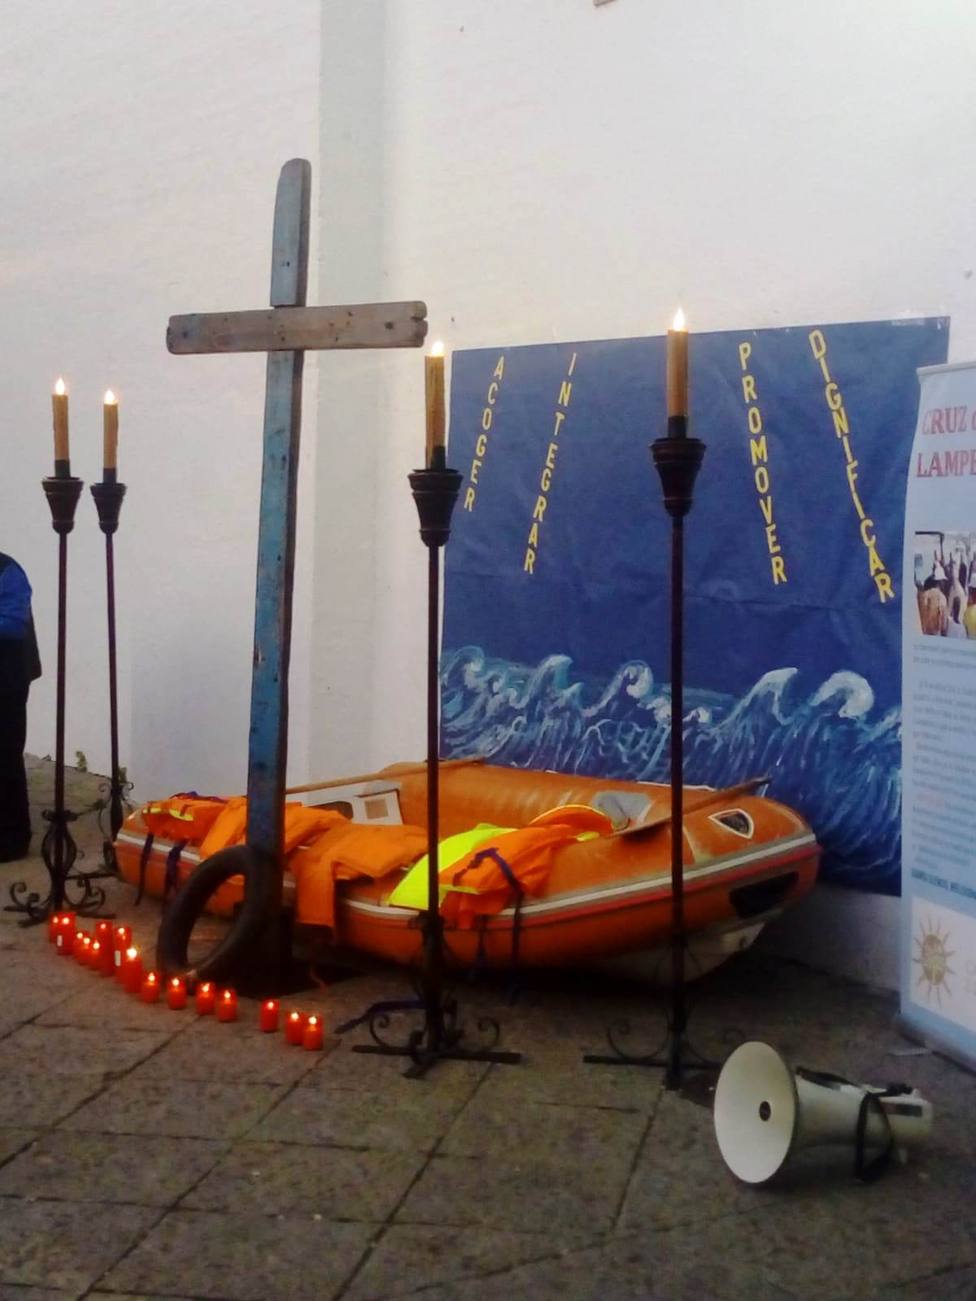 La Cruz de Lampedusa recorrerá desde mañana la Diócesis de Huelva